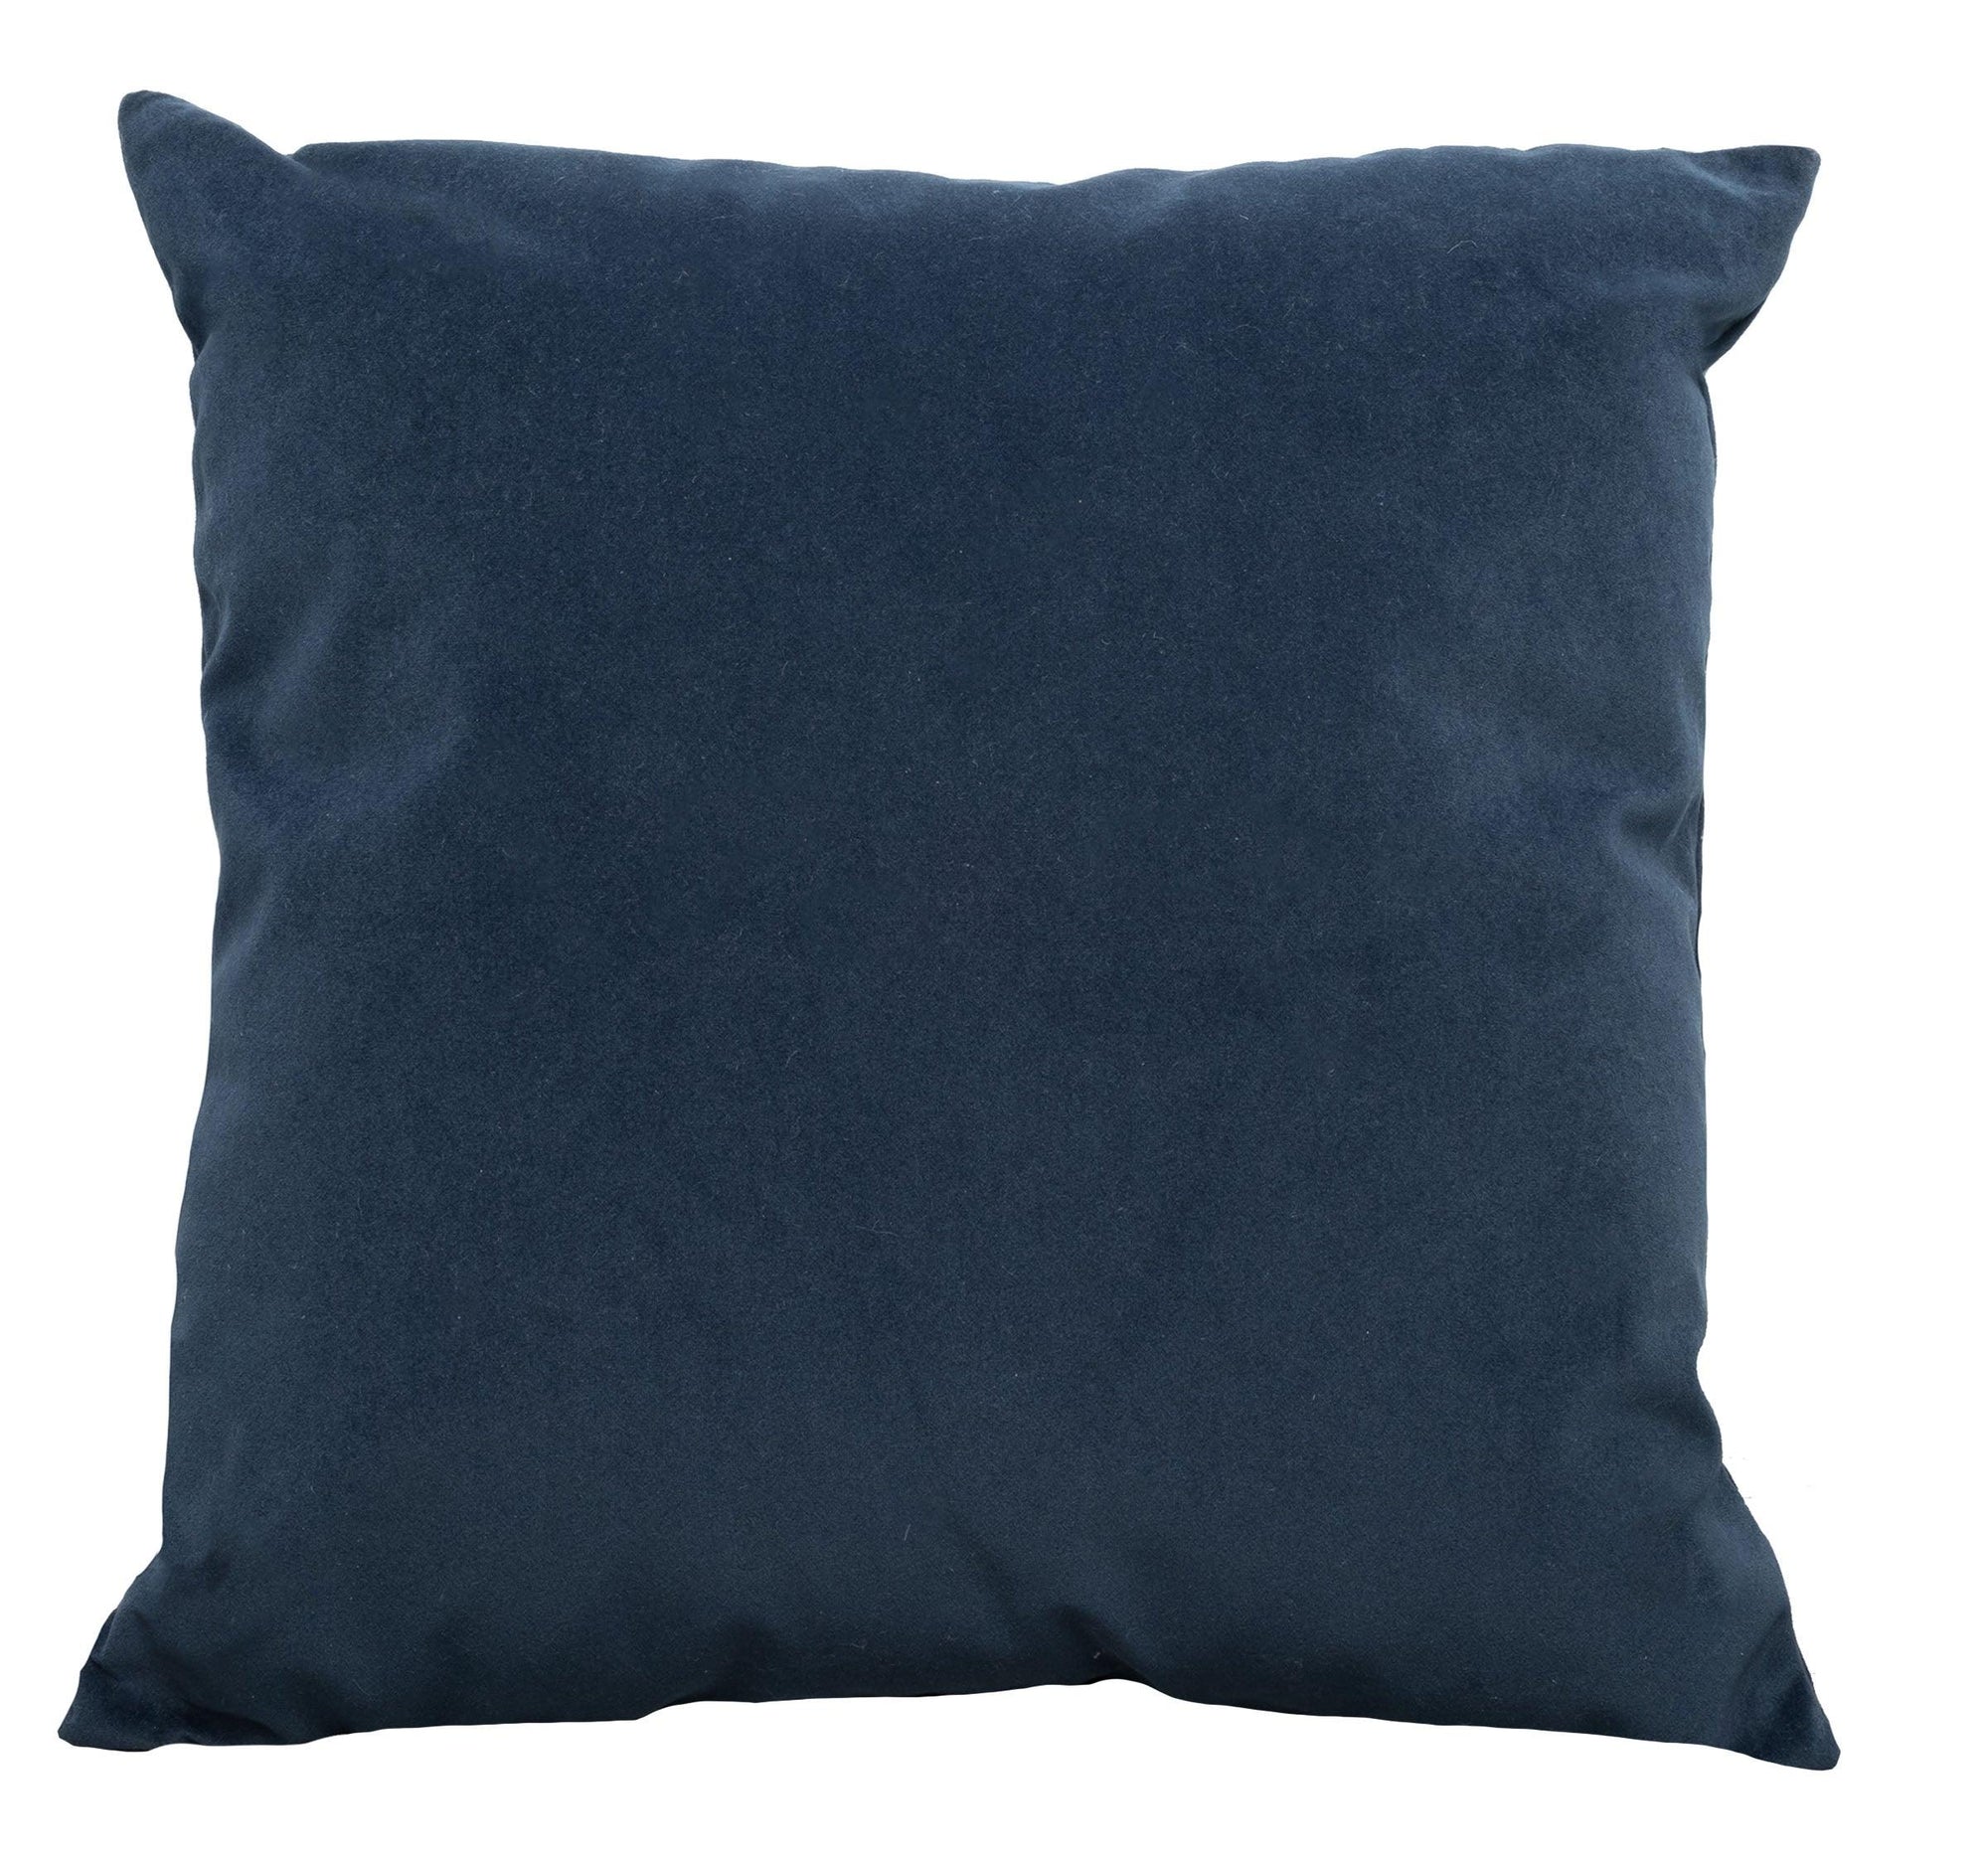 Navy Velvet Pillow 18x18"